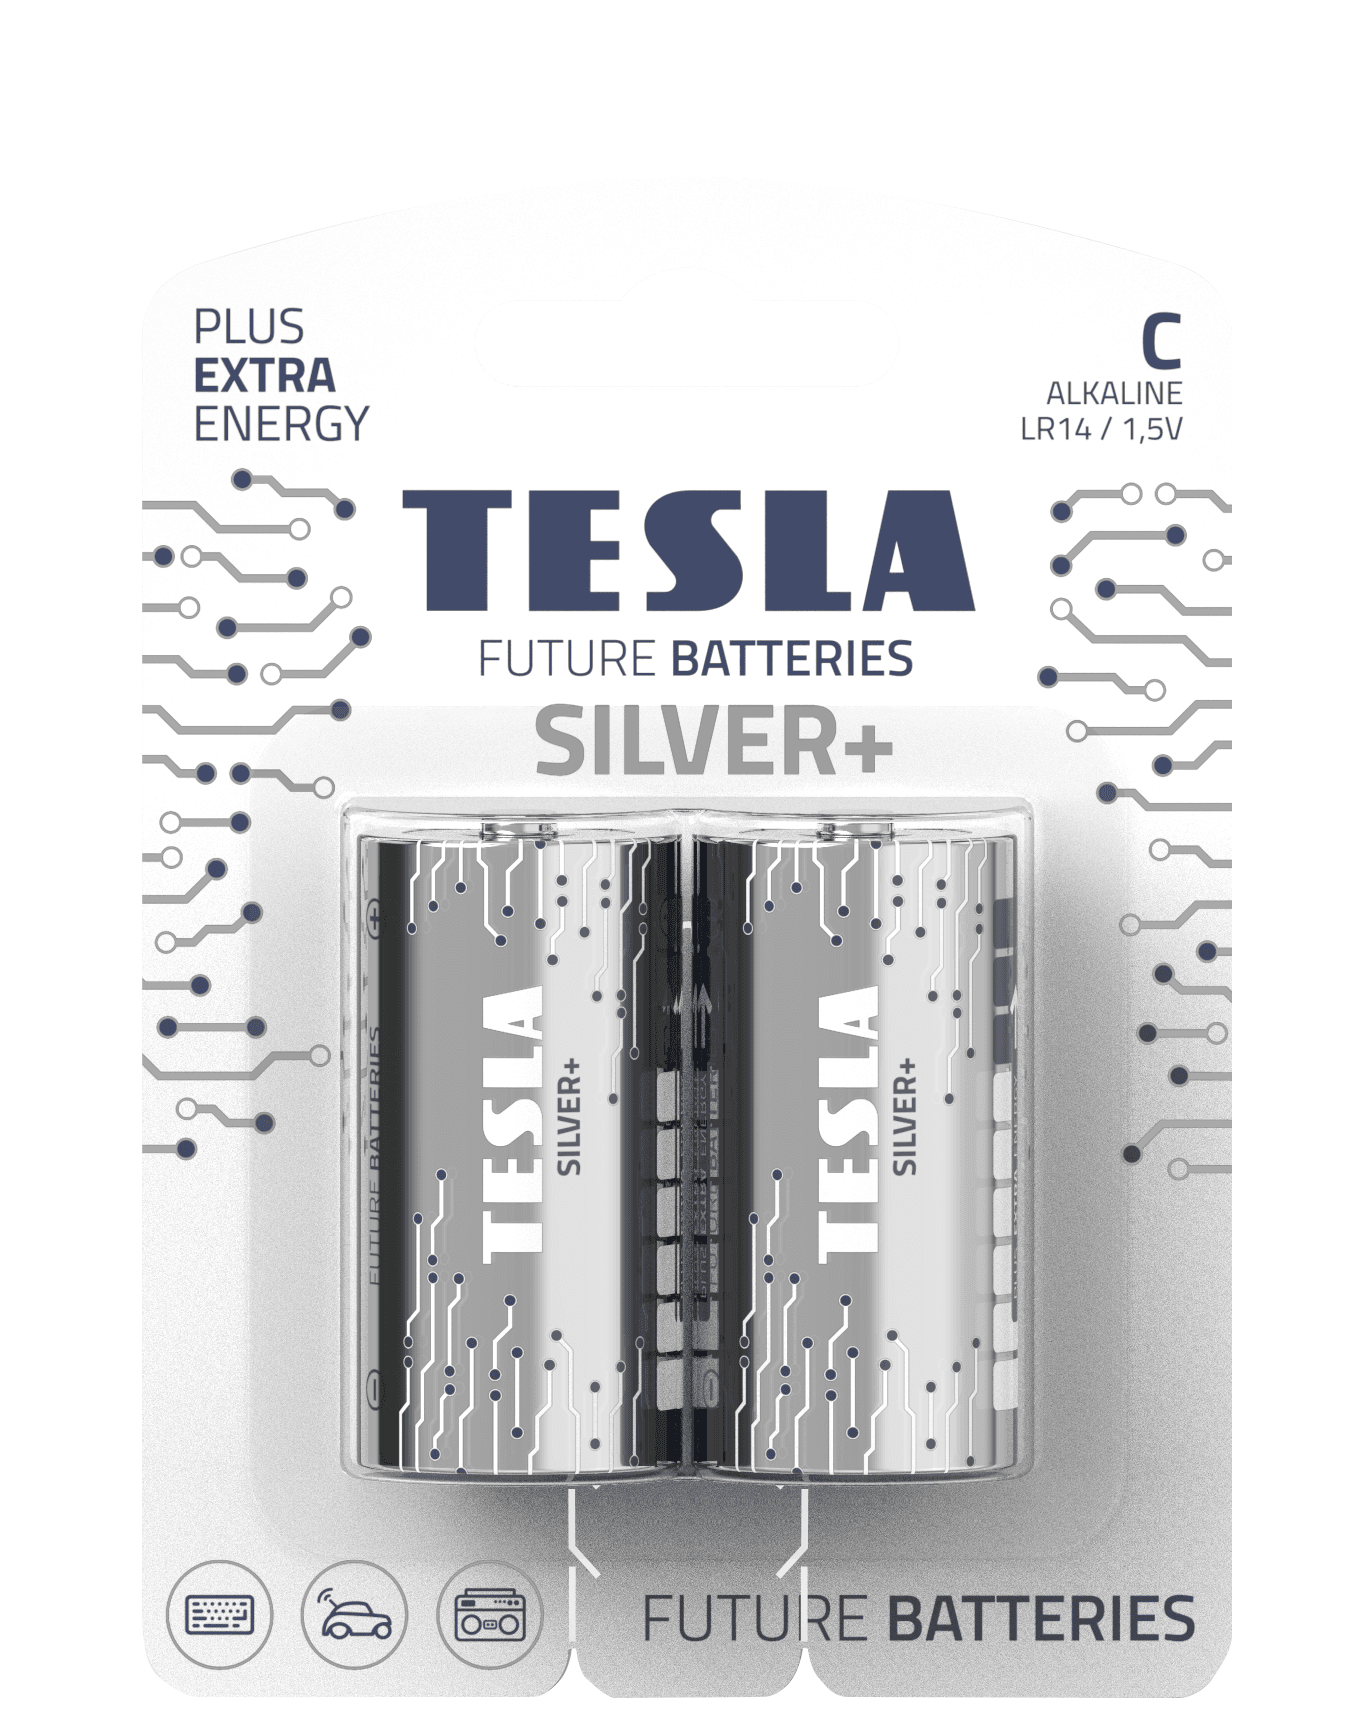 Alkaline batteries TESLA C/LR14/1,5V 2pcs SILVER+